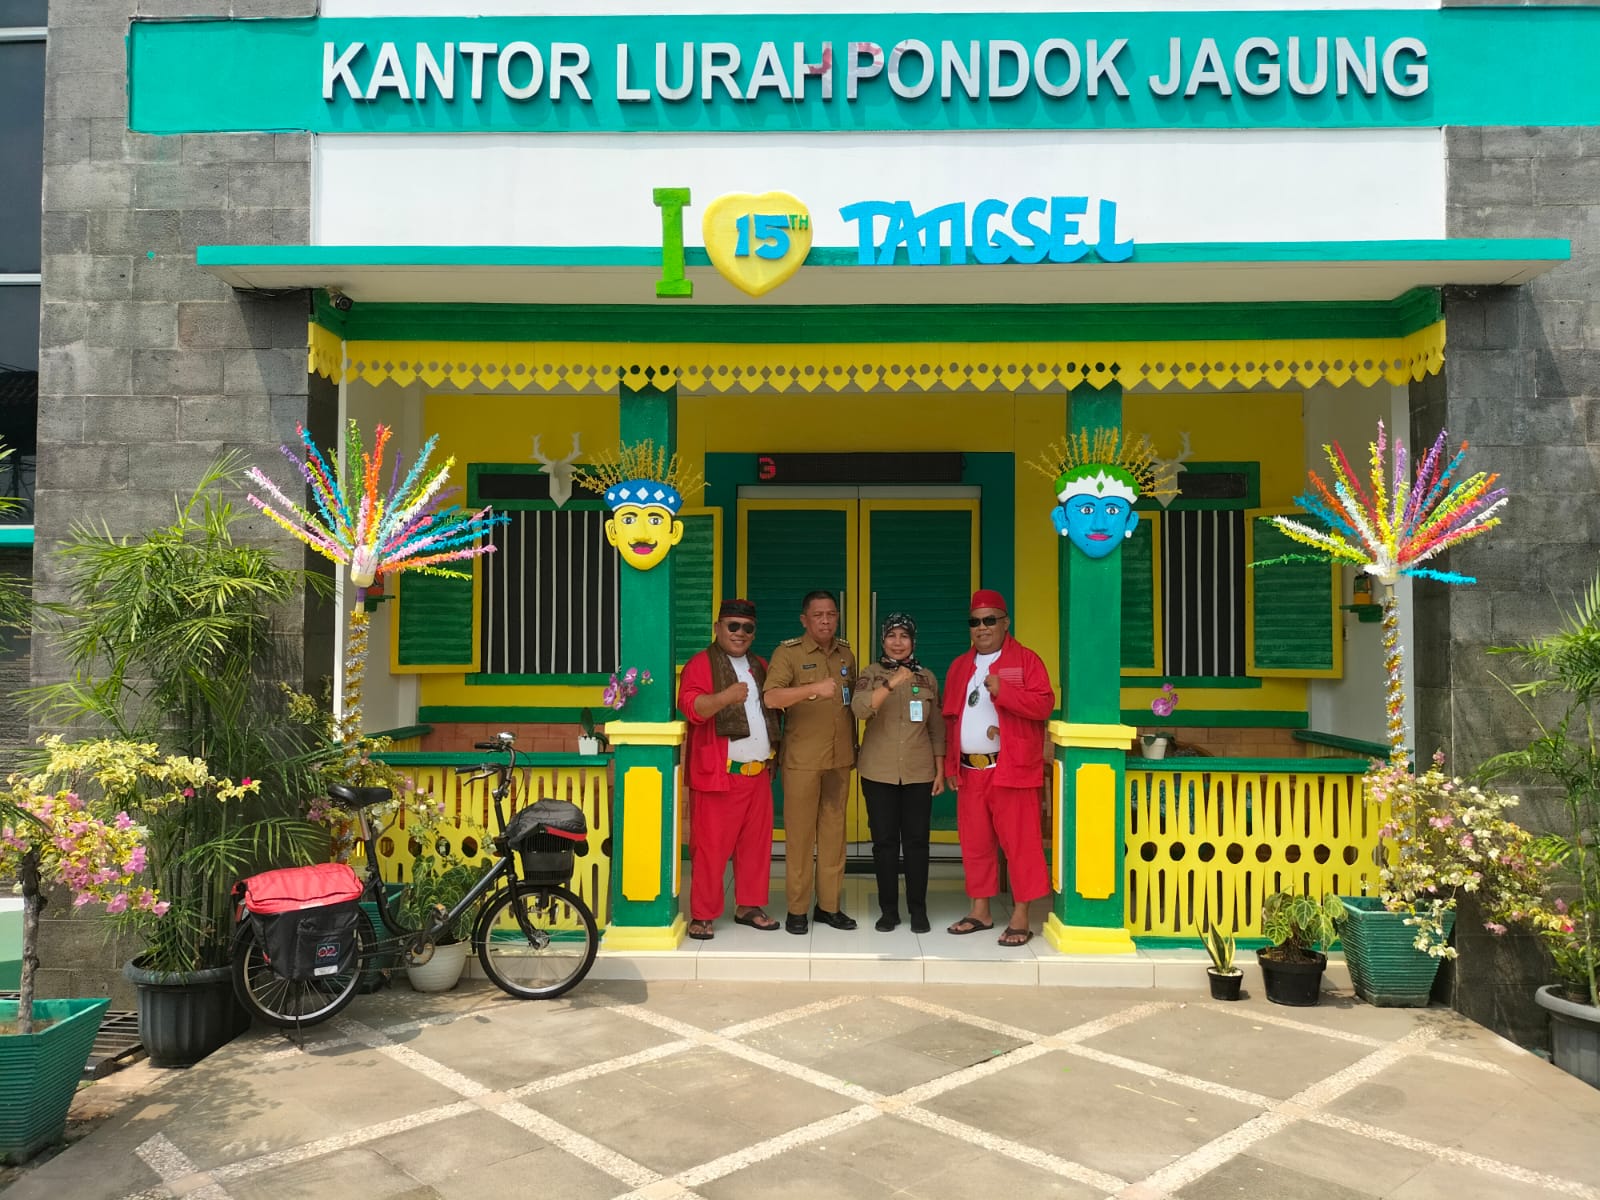 Blandongan di teras Kantor Lurah Pondok Jagung, Kecamatan Serpong Utara meraih juara pertama Lomba Dekorasi dan Kebersihan.(Ist)